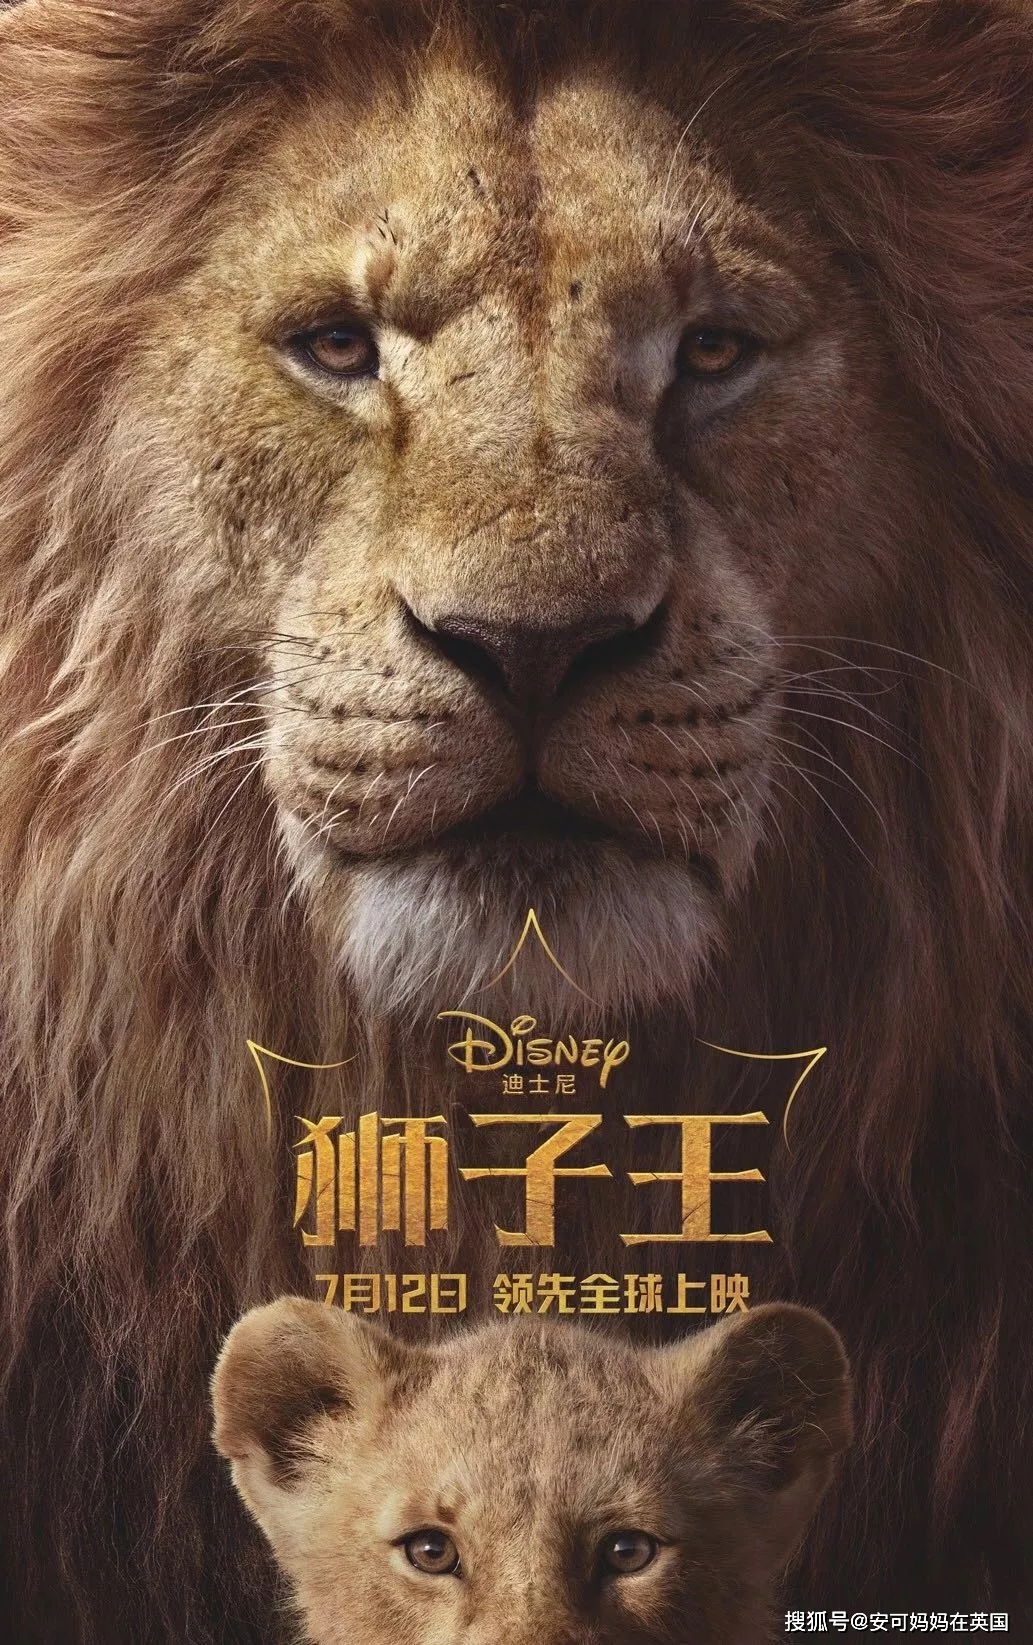 学了高端英语才明白,原来最新热映的《狮子王》电影还可以这样看!